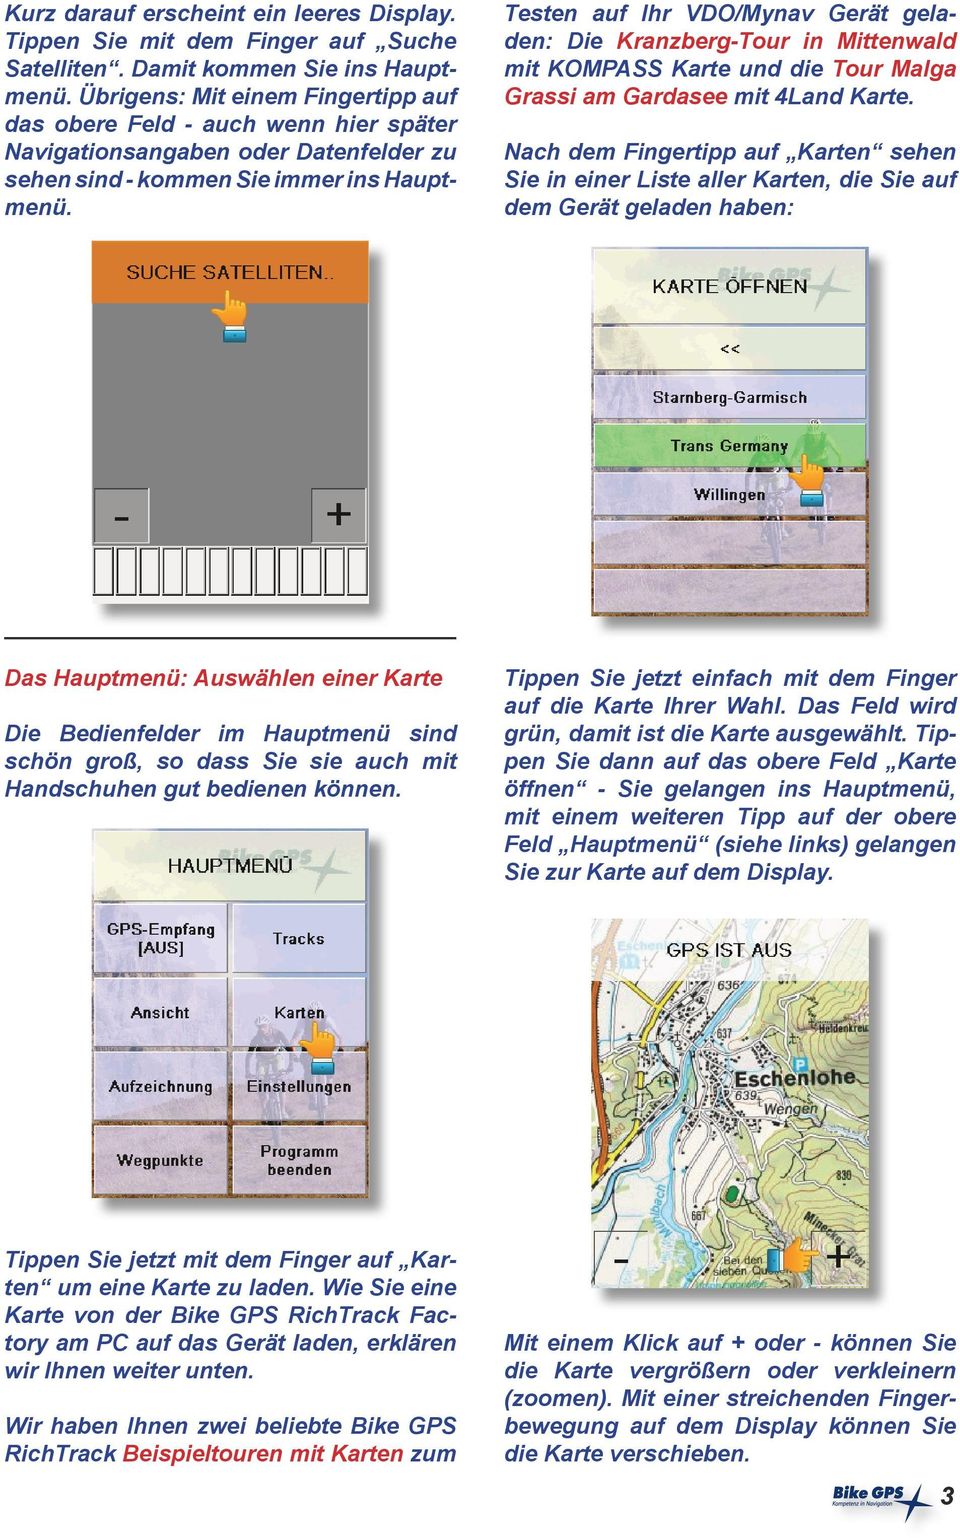 Testen auf Ihr VDO/Mynav Gerät geladen: Die Kranzberg-Tour in Mittenwald mit KOMPASS Karte und die Tour Malga Grassi am Gardasee mit 4Land Karte.